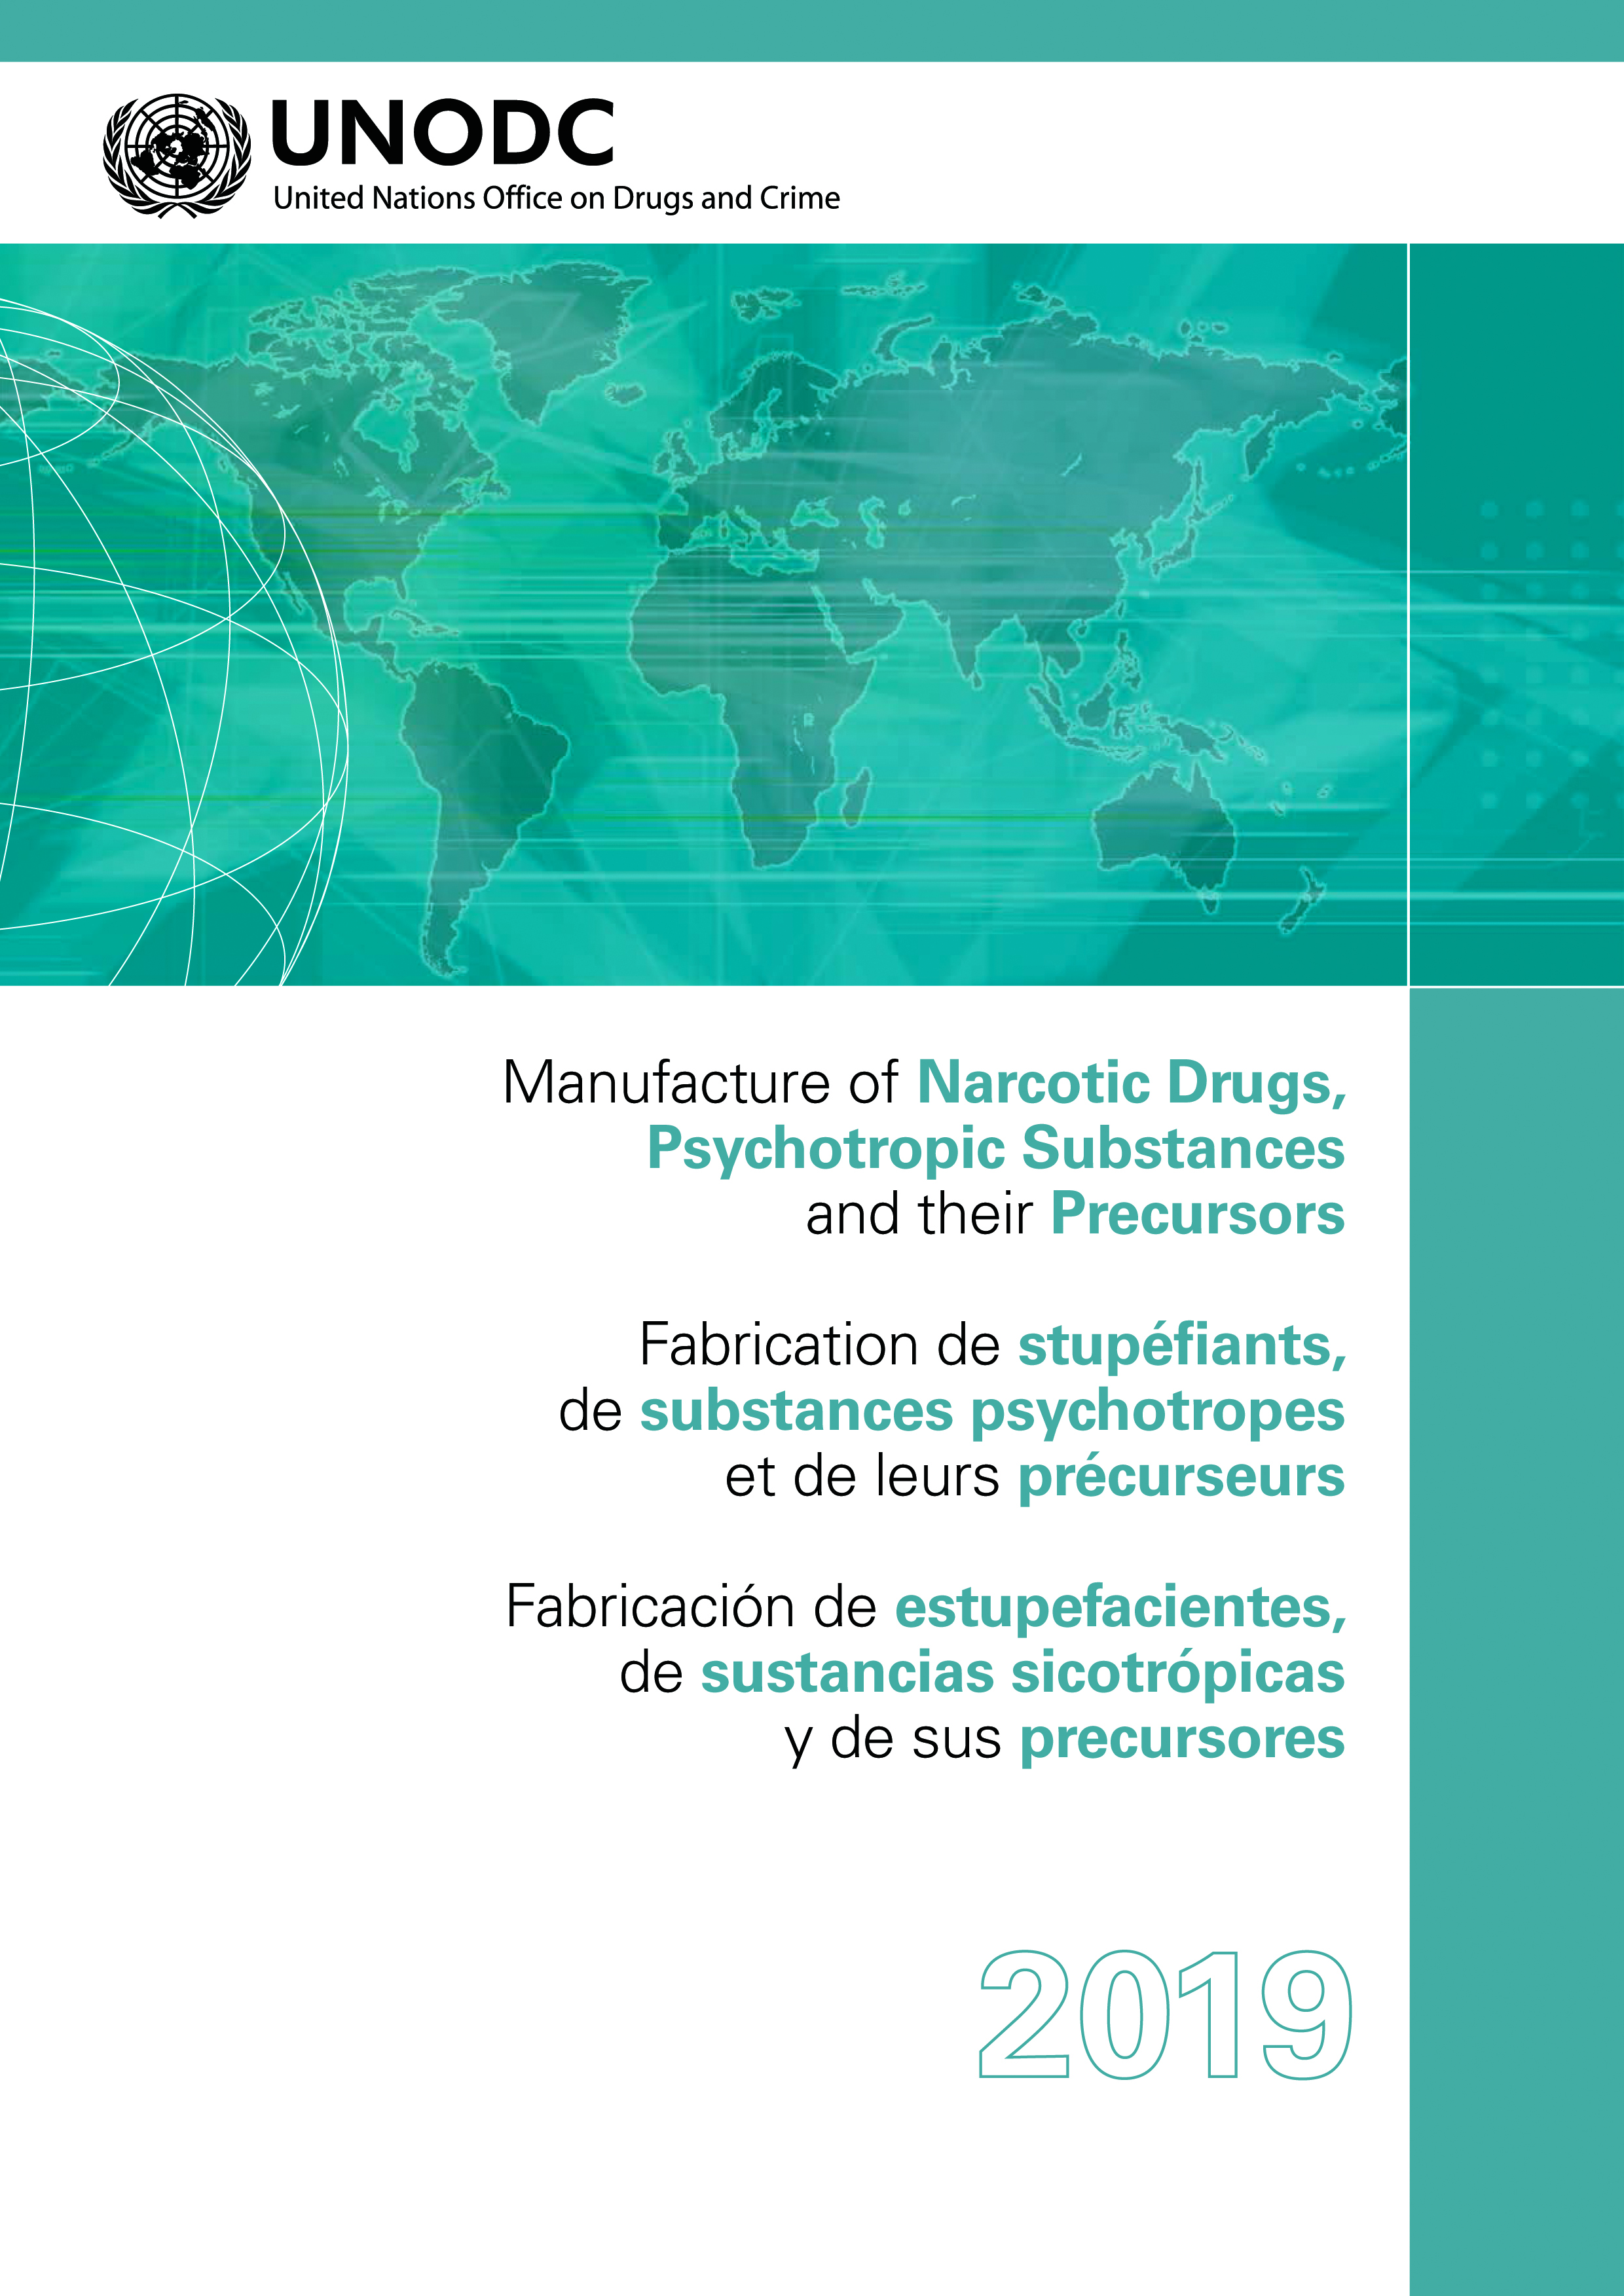 image of Fabricación de estupefacientes, de sustancias sicotrópicas y de sus precursores 2019